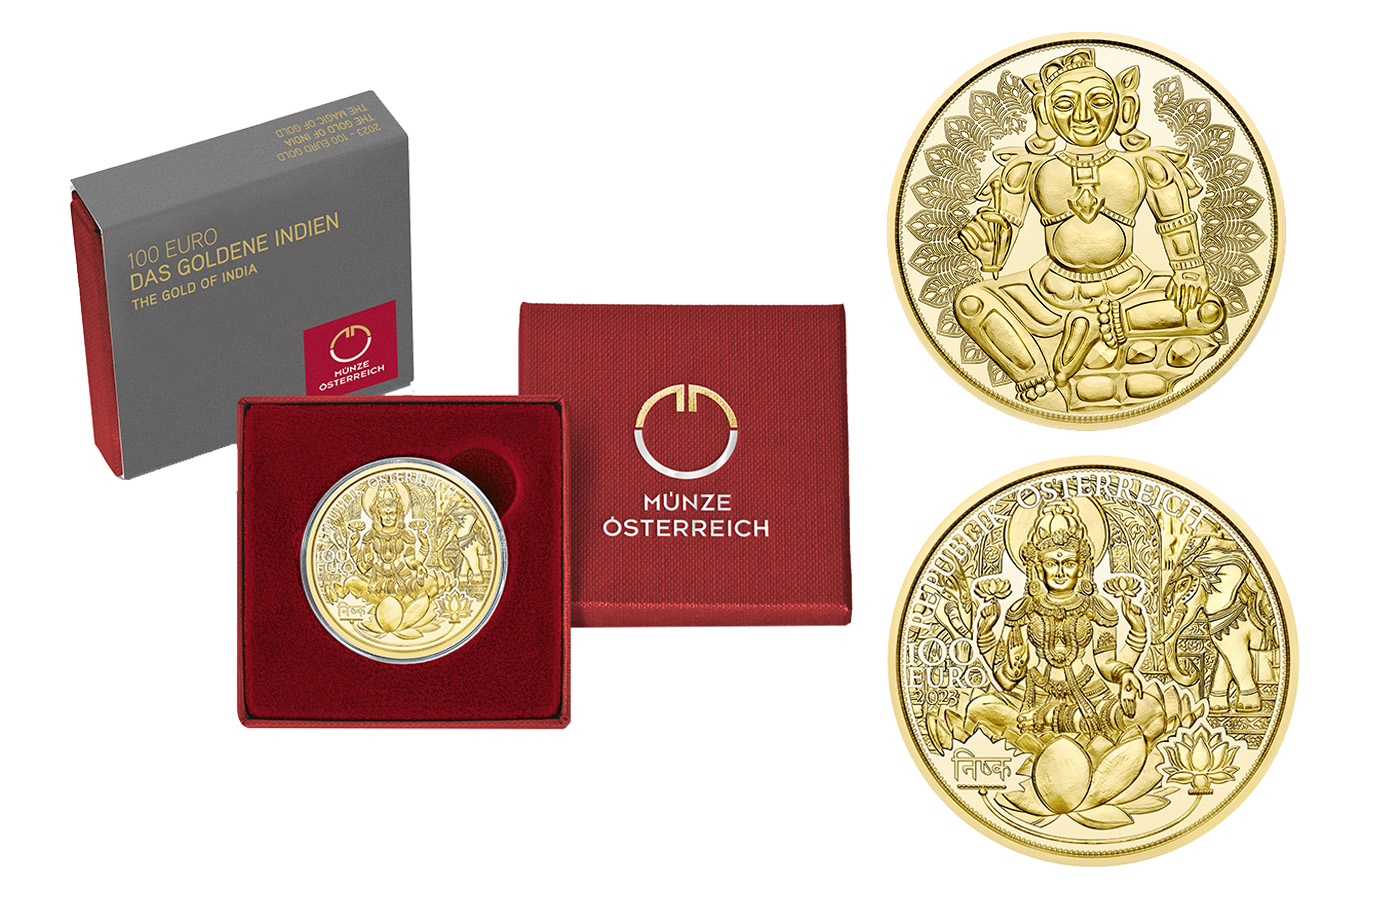 "La magia dell'oro: India" - 100 euro gr. 15.78 in oro 986/ - in confezione originale 